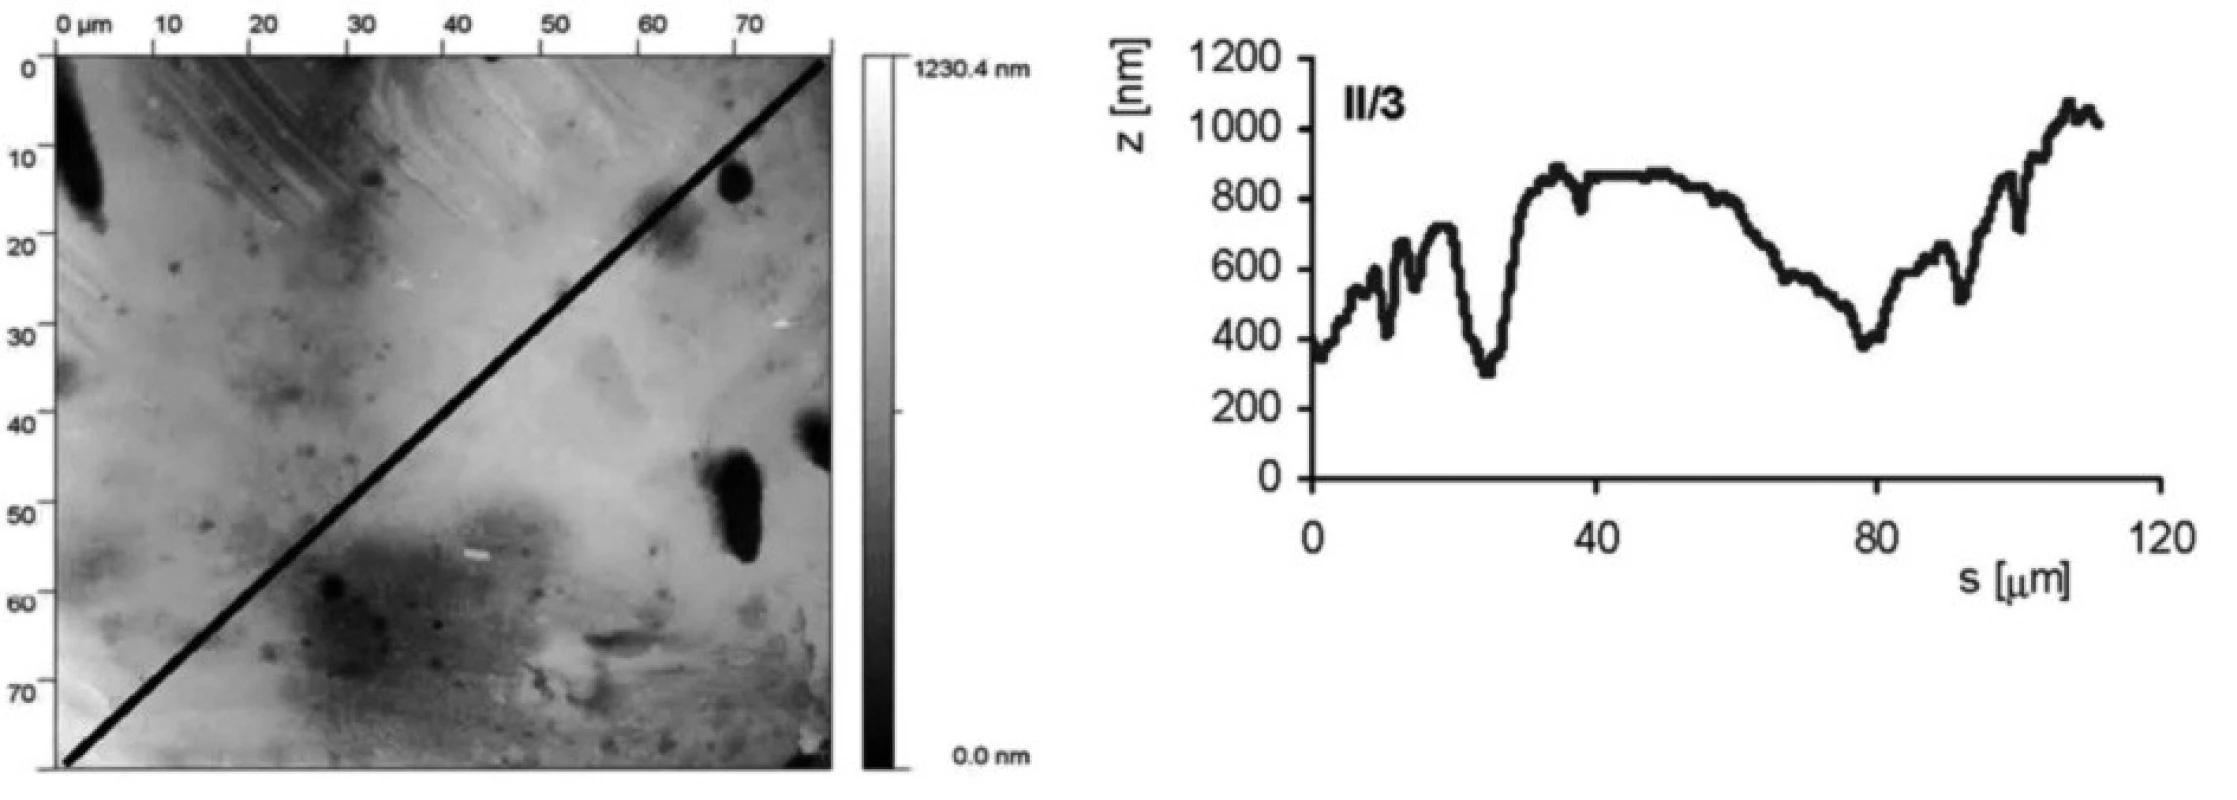 AFM vzorku II/3 (leštěný a leptaný s povrchovou ztrátou 0,03 mm). Snímek povrchu a jeho profil ve směru úhlopříčky, naznačené ve snímku, byl měřen pomocí AFMmikroskopu Explorer III (Veeco, Santa Barbara, Kalifornie,USA).